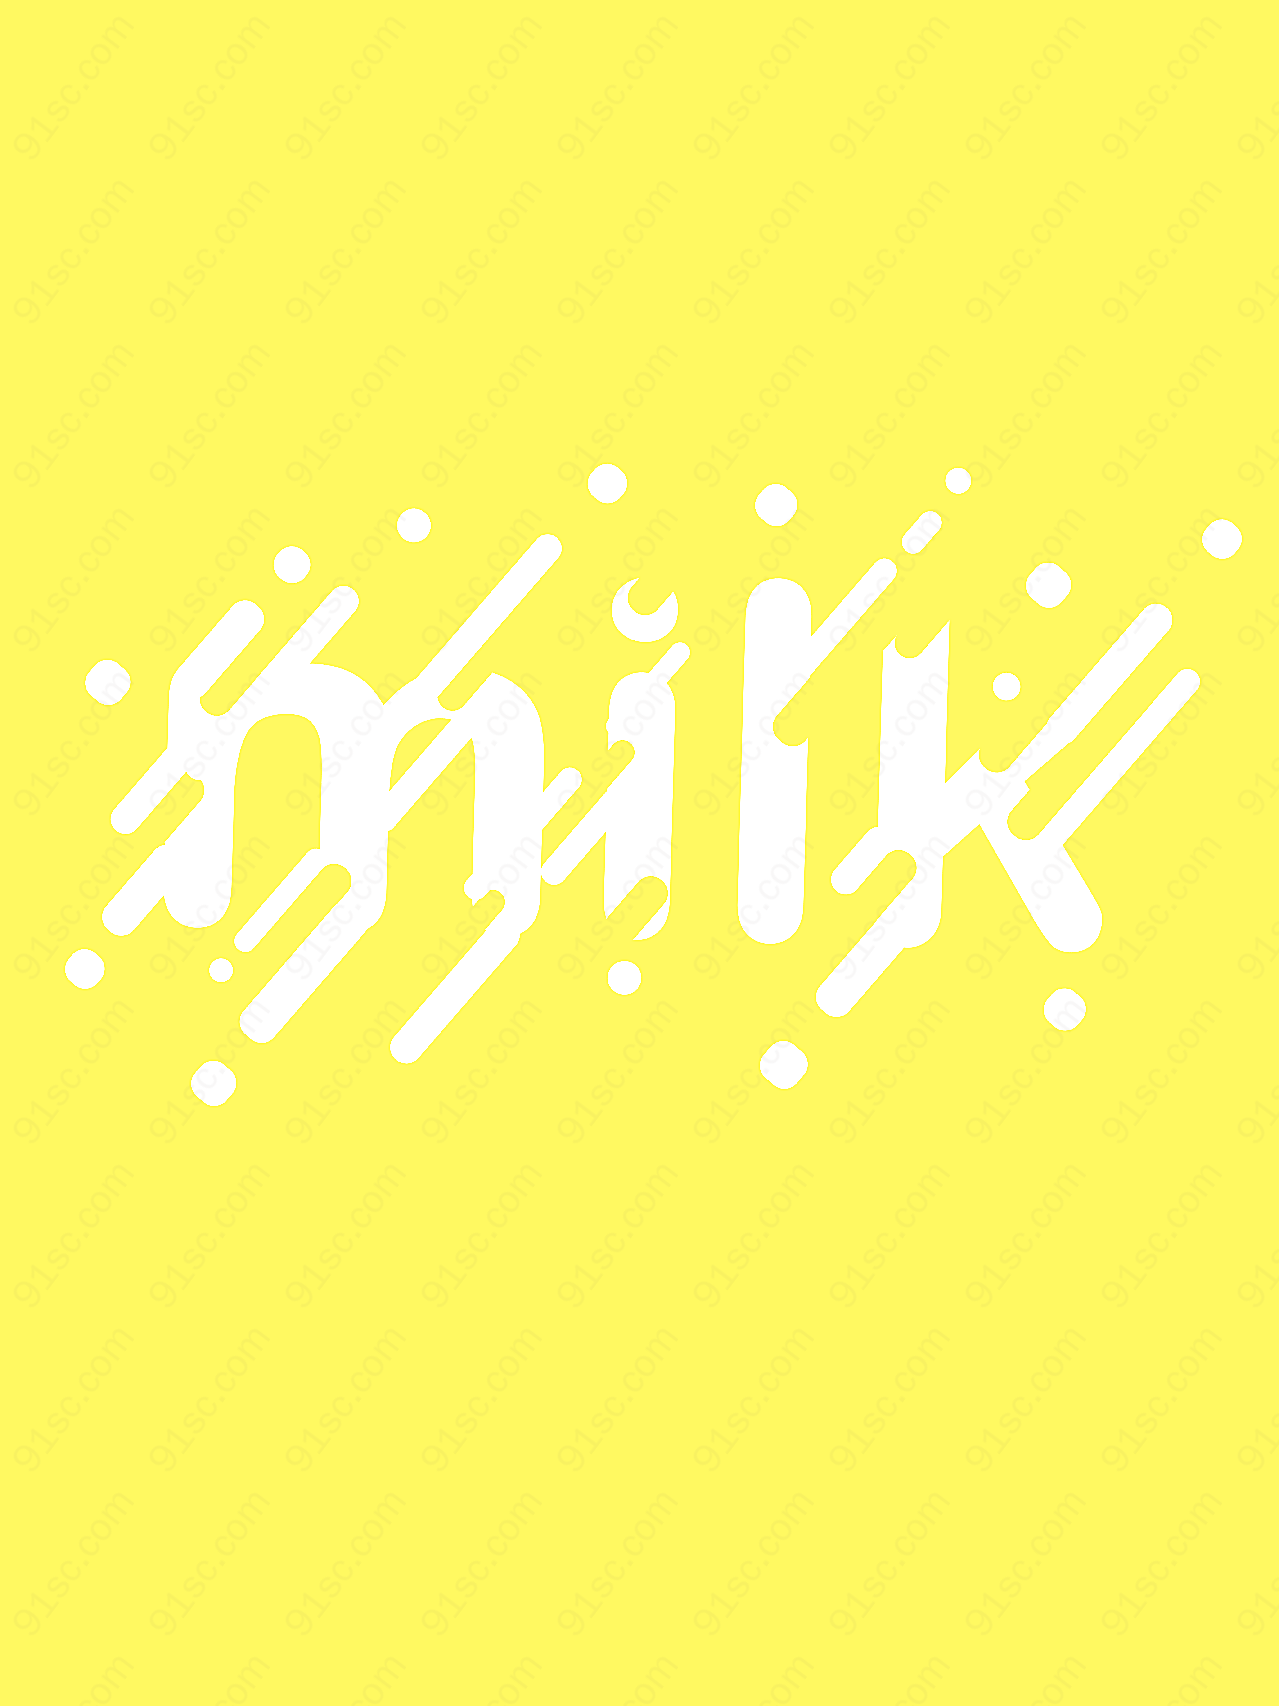 牛奶图标